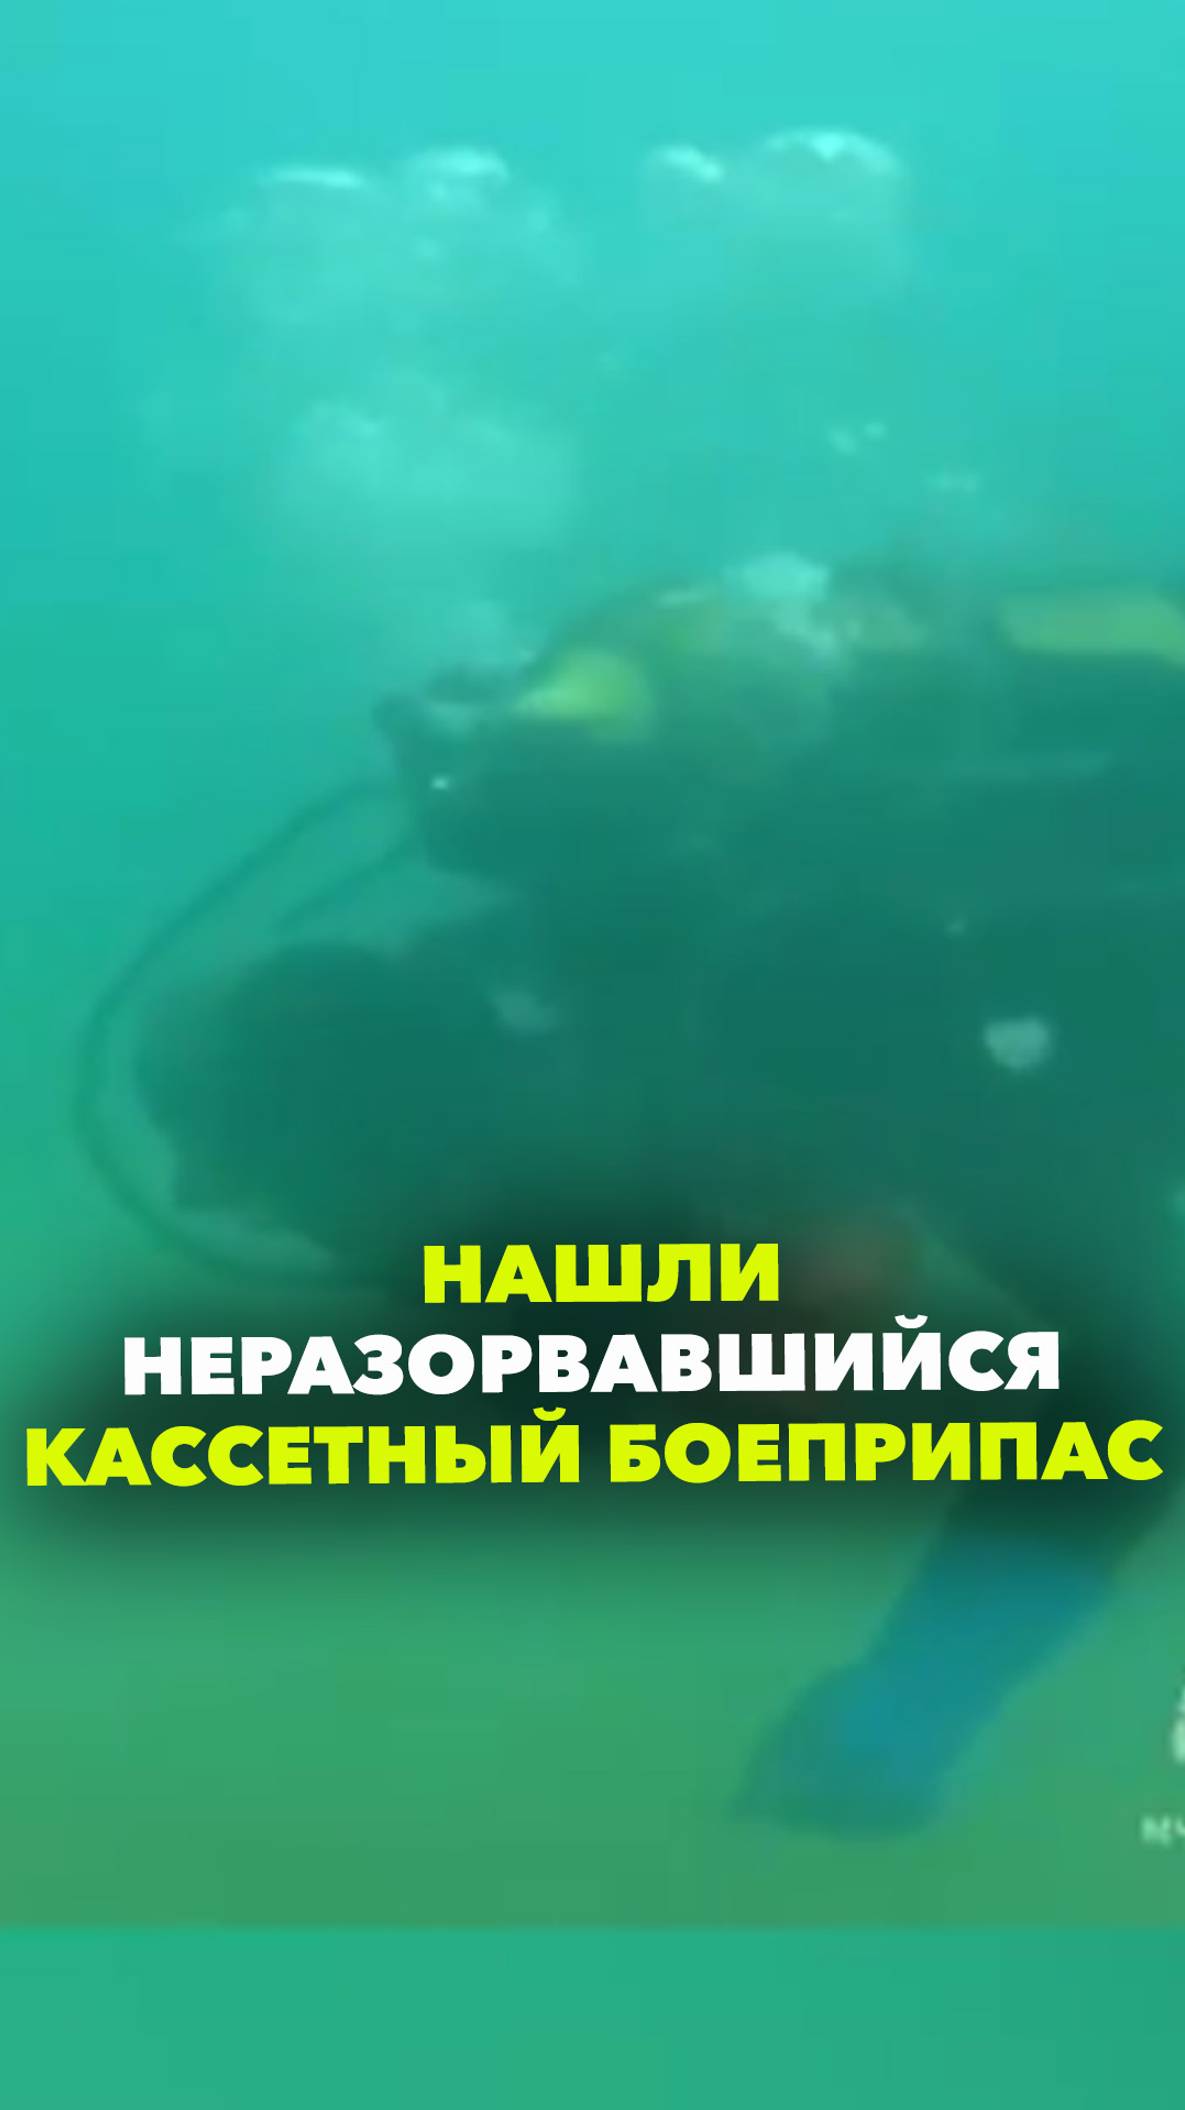 Целый кассетный боеприпас нашли российские водолазы на дне моря после атаки на Севастополь